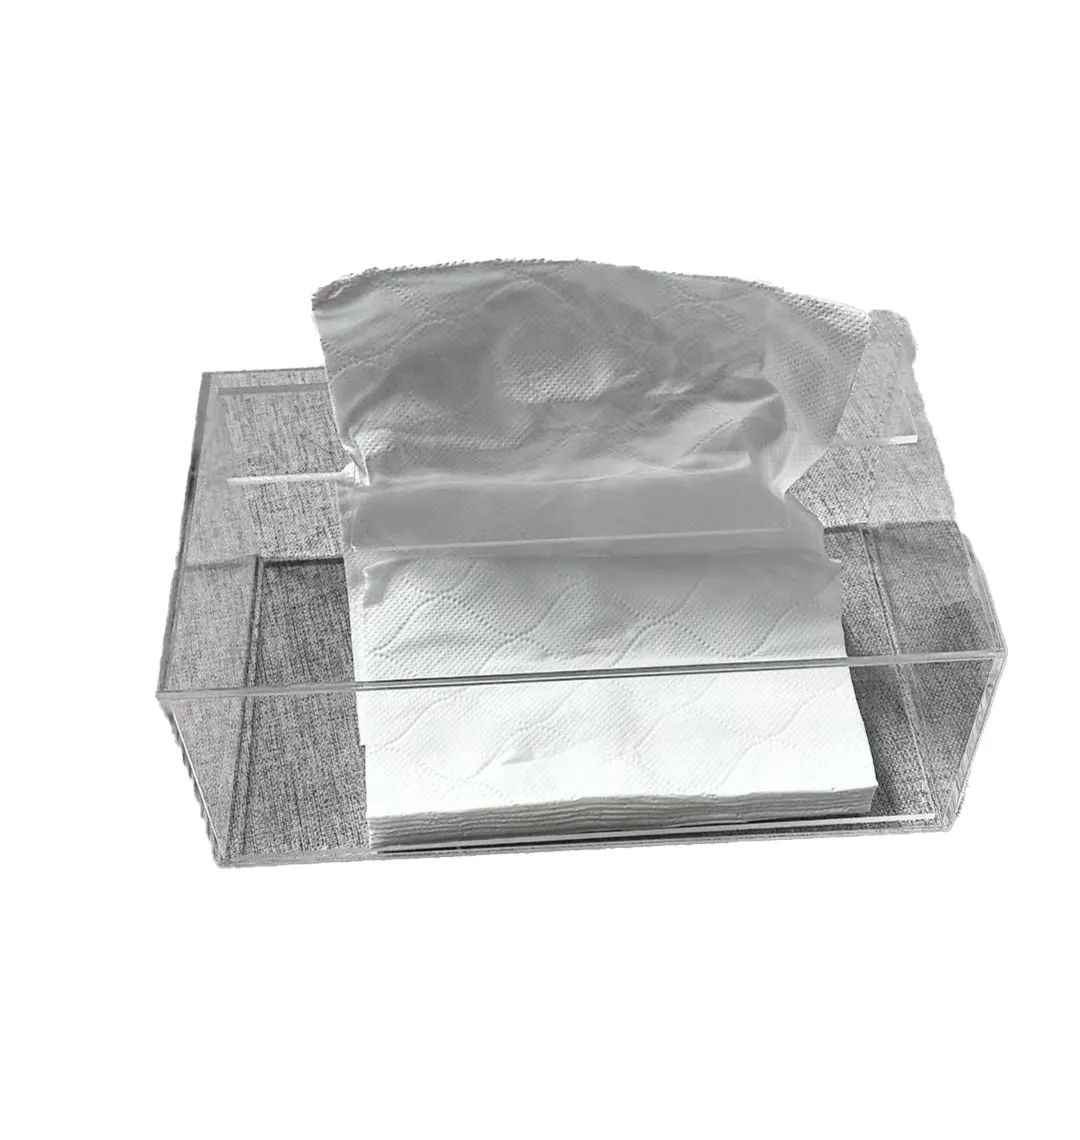 Badezimmer Küche Esszimmer Kunststoff Acryl Seidenpapierbox Abdeckung Halter Seidenpapierbox Acryl-Wandelhalter Wimpernspenderbox